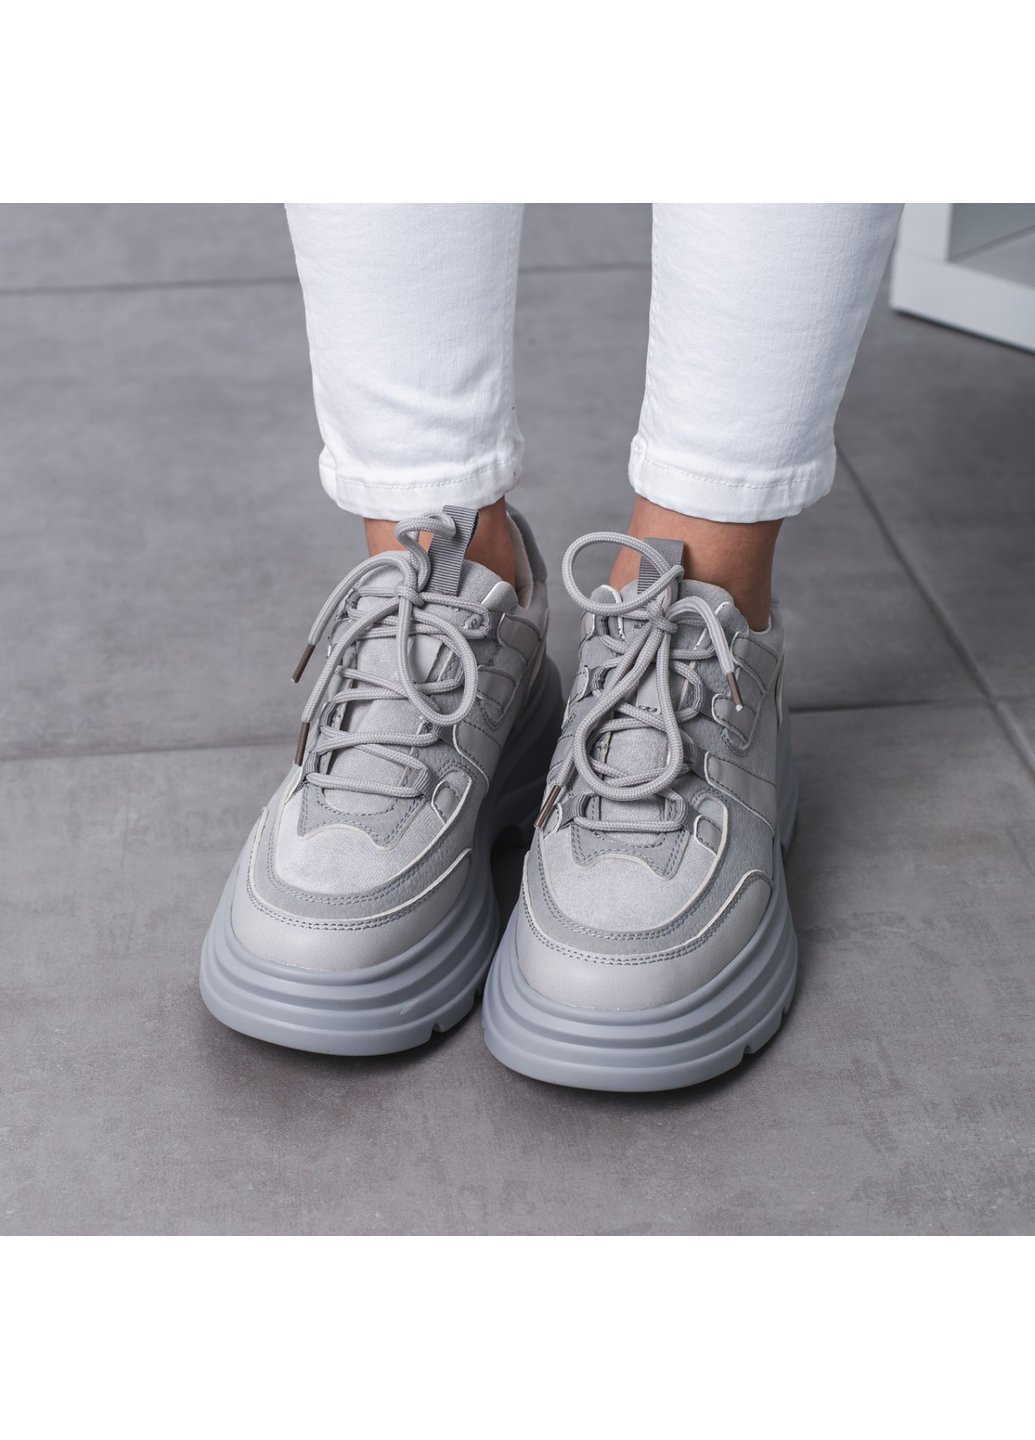 Серые демисезонные кроссовки женские ash 3525 40 25 см серый Fashion